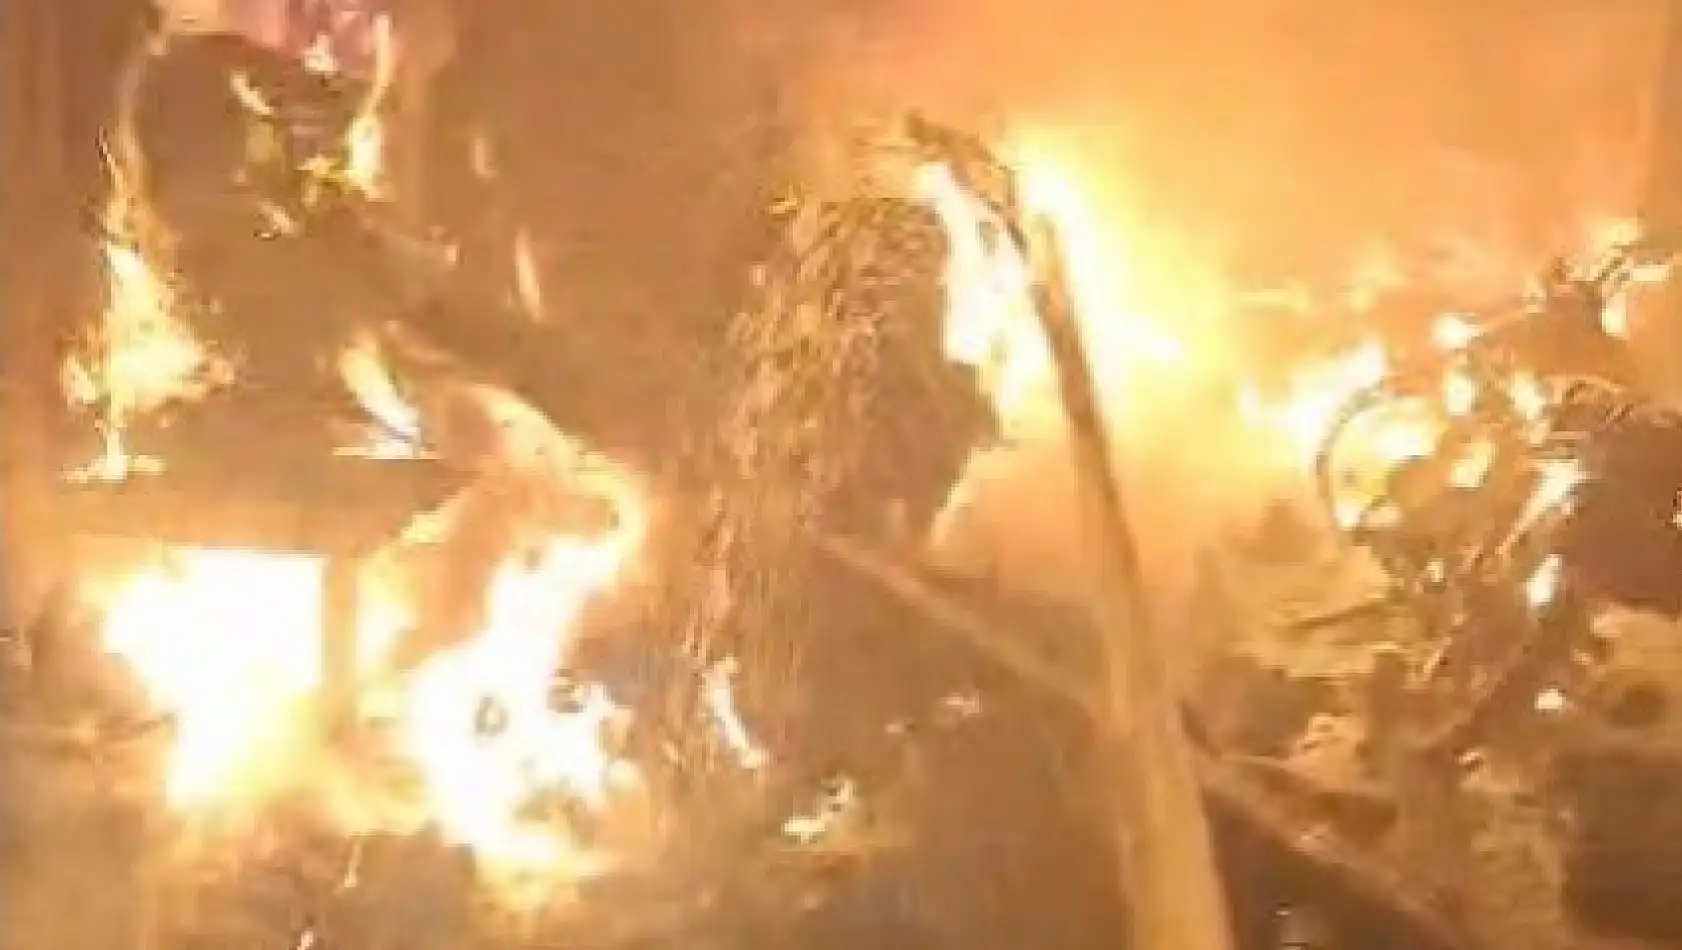 Kahramanmaraş'ta ev yangını